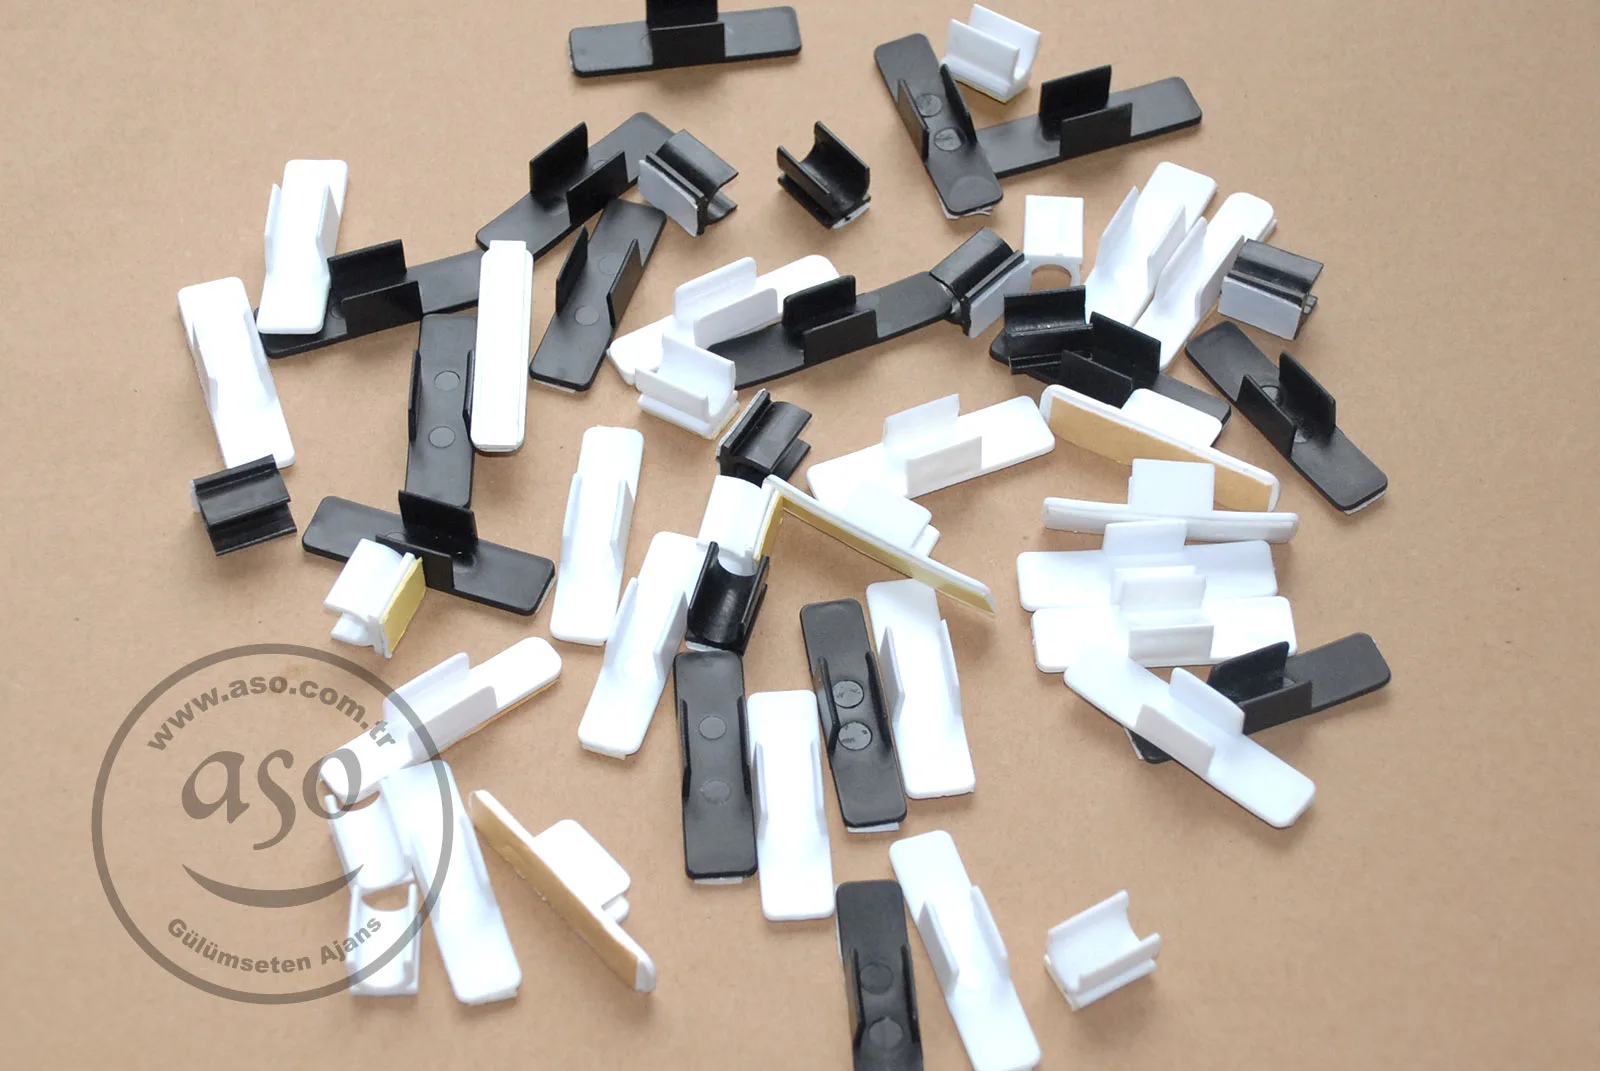 for 7-8 mm diameter pens Pen holder clip plastic adhesive sticky 500 pcs White 